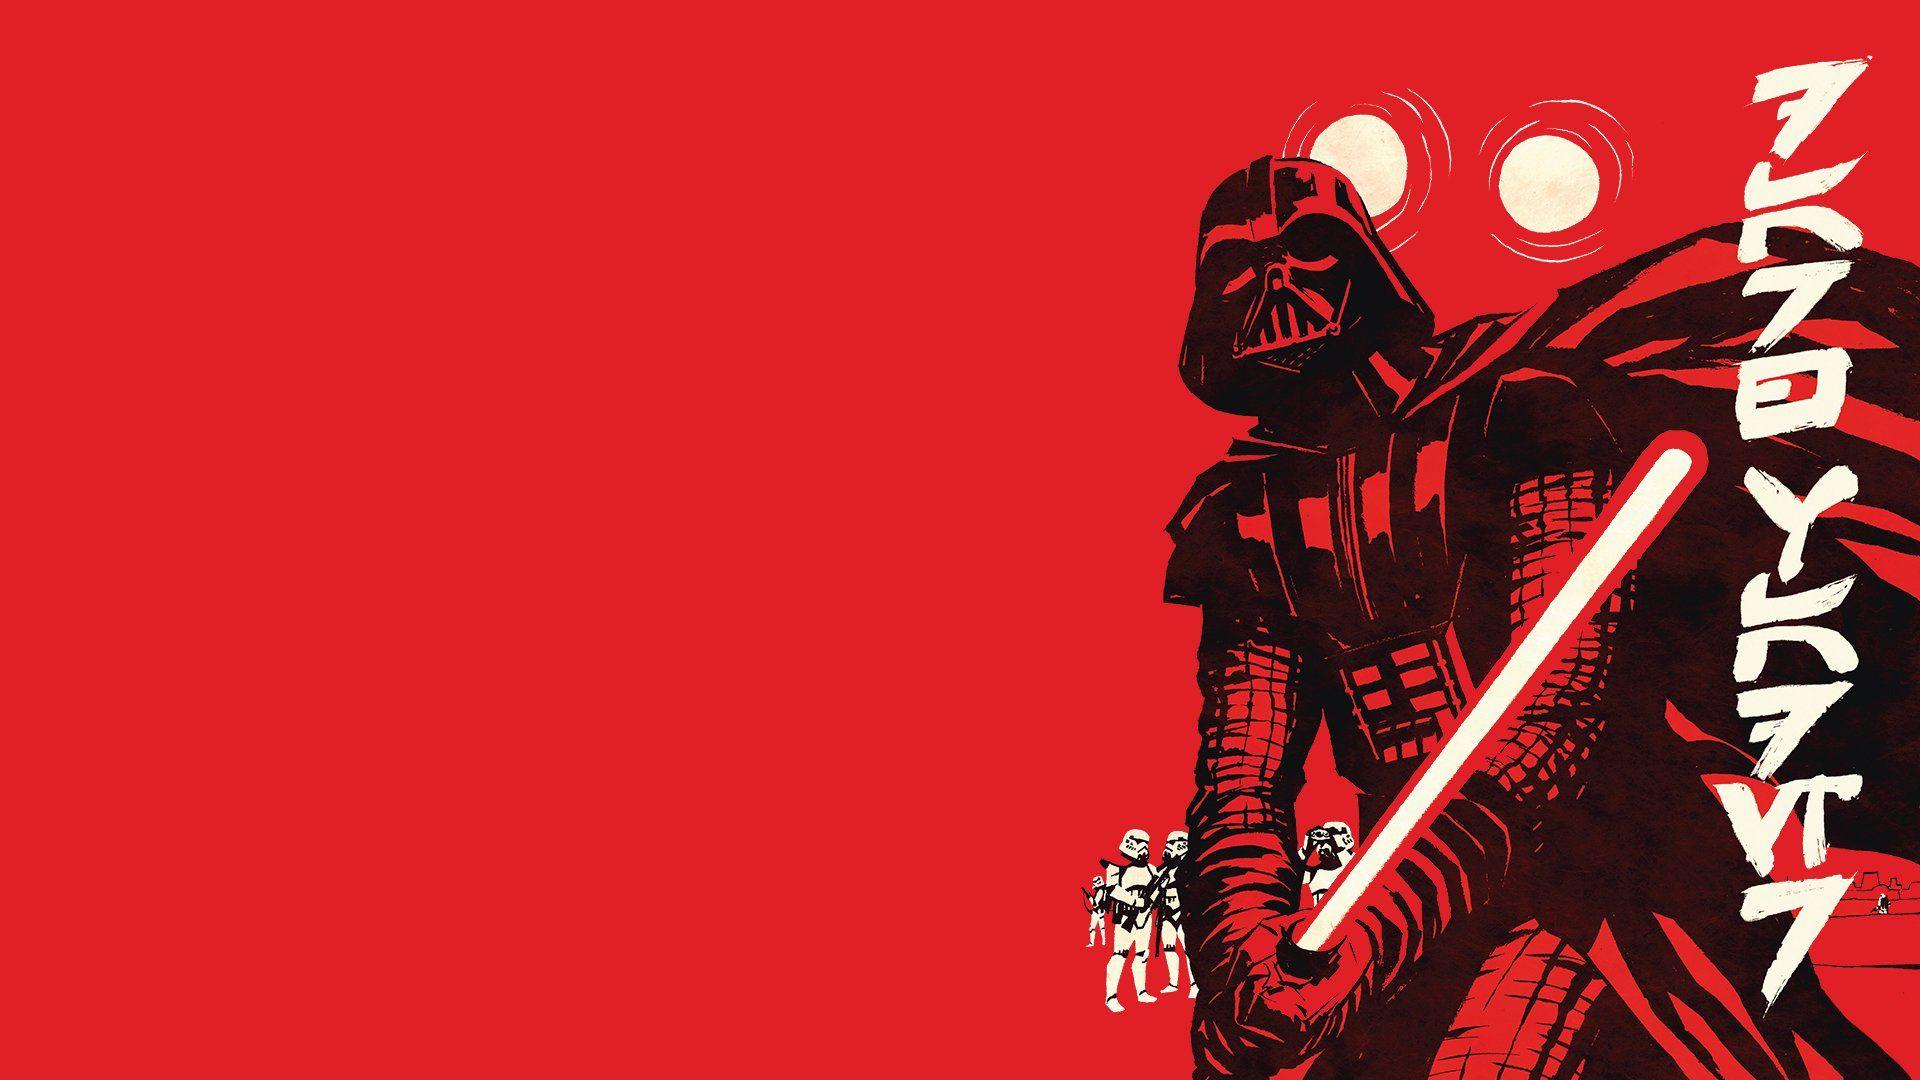 Darth Vader variant cover Full HD Wallpaper